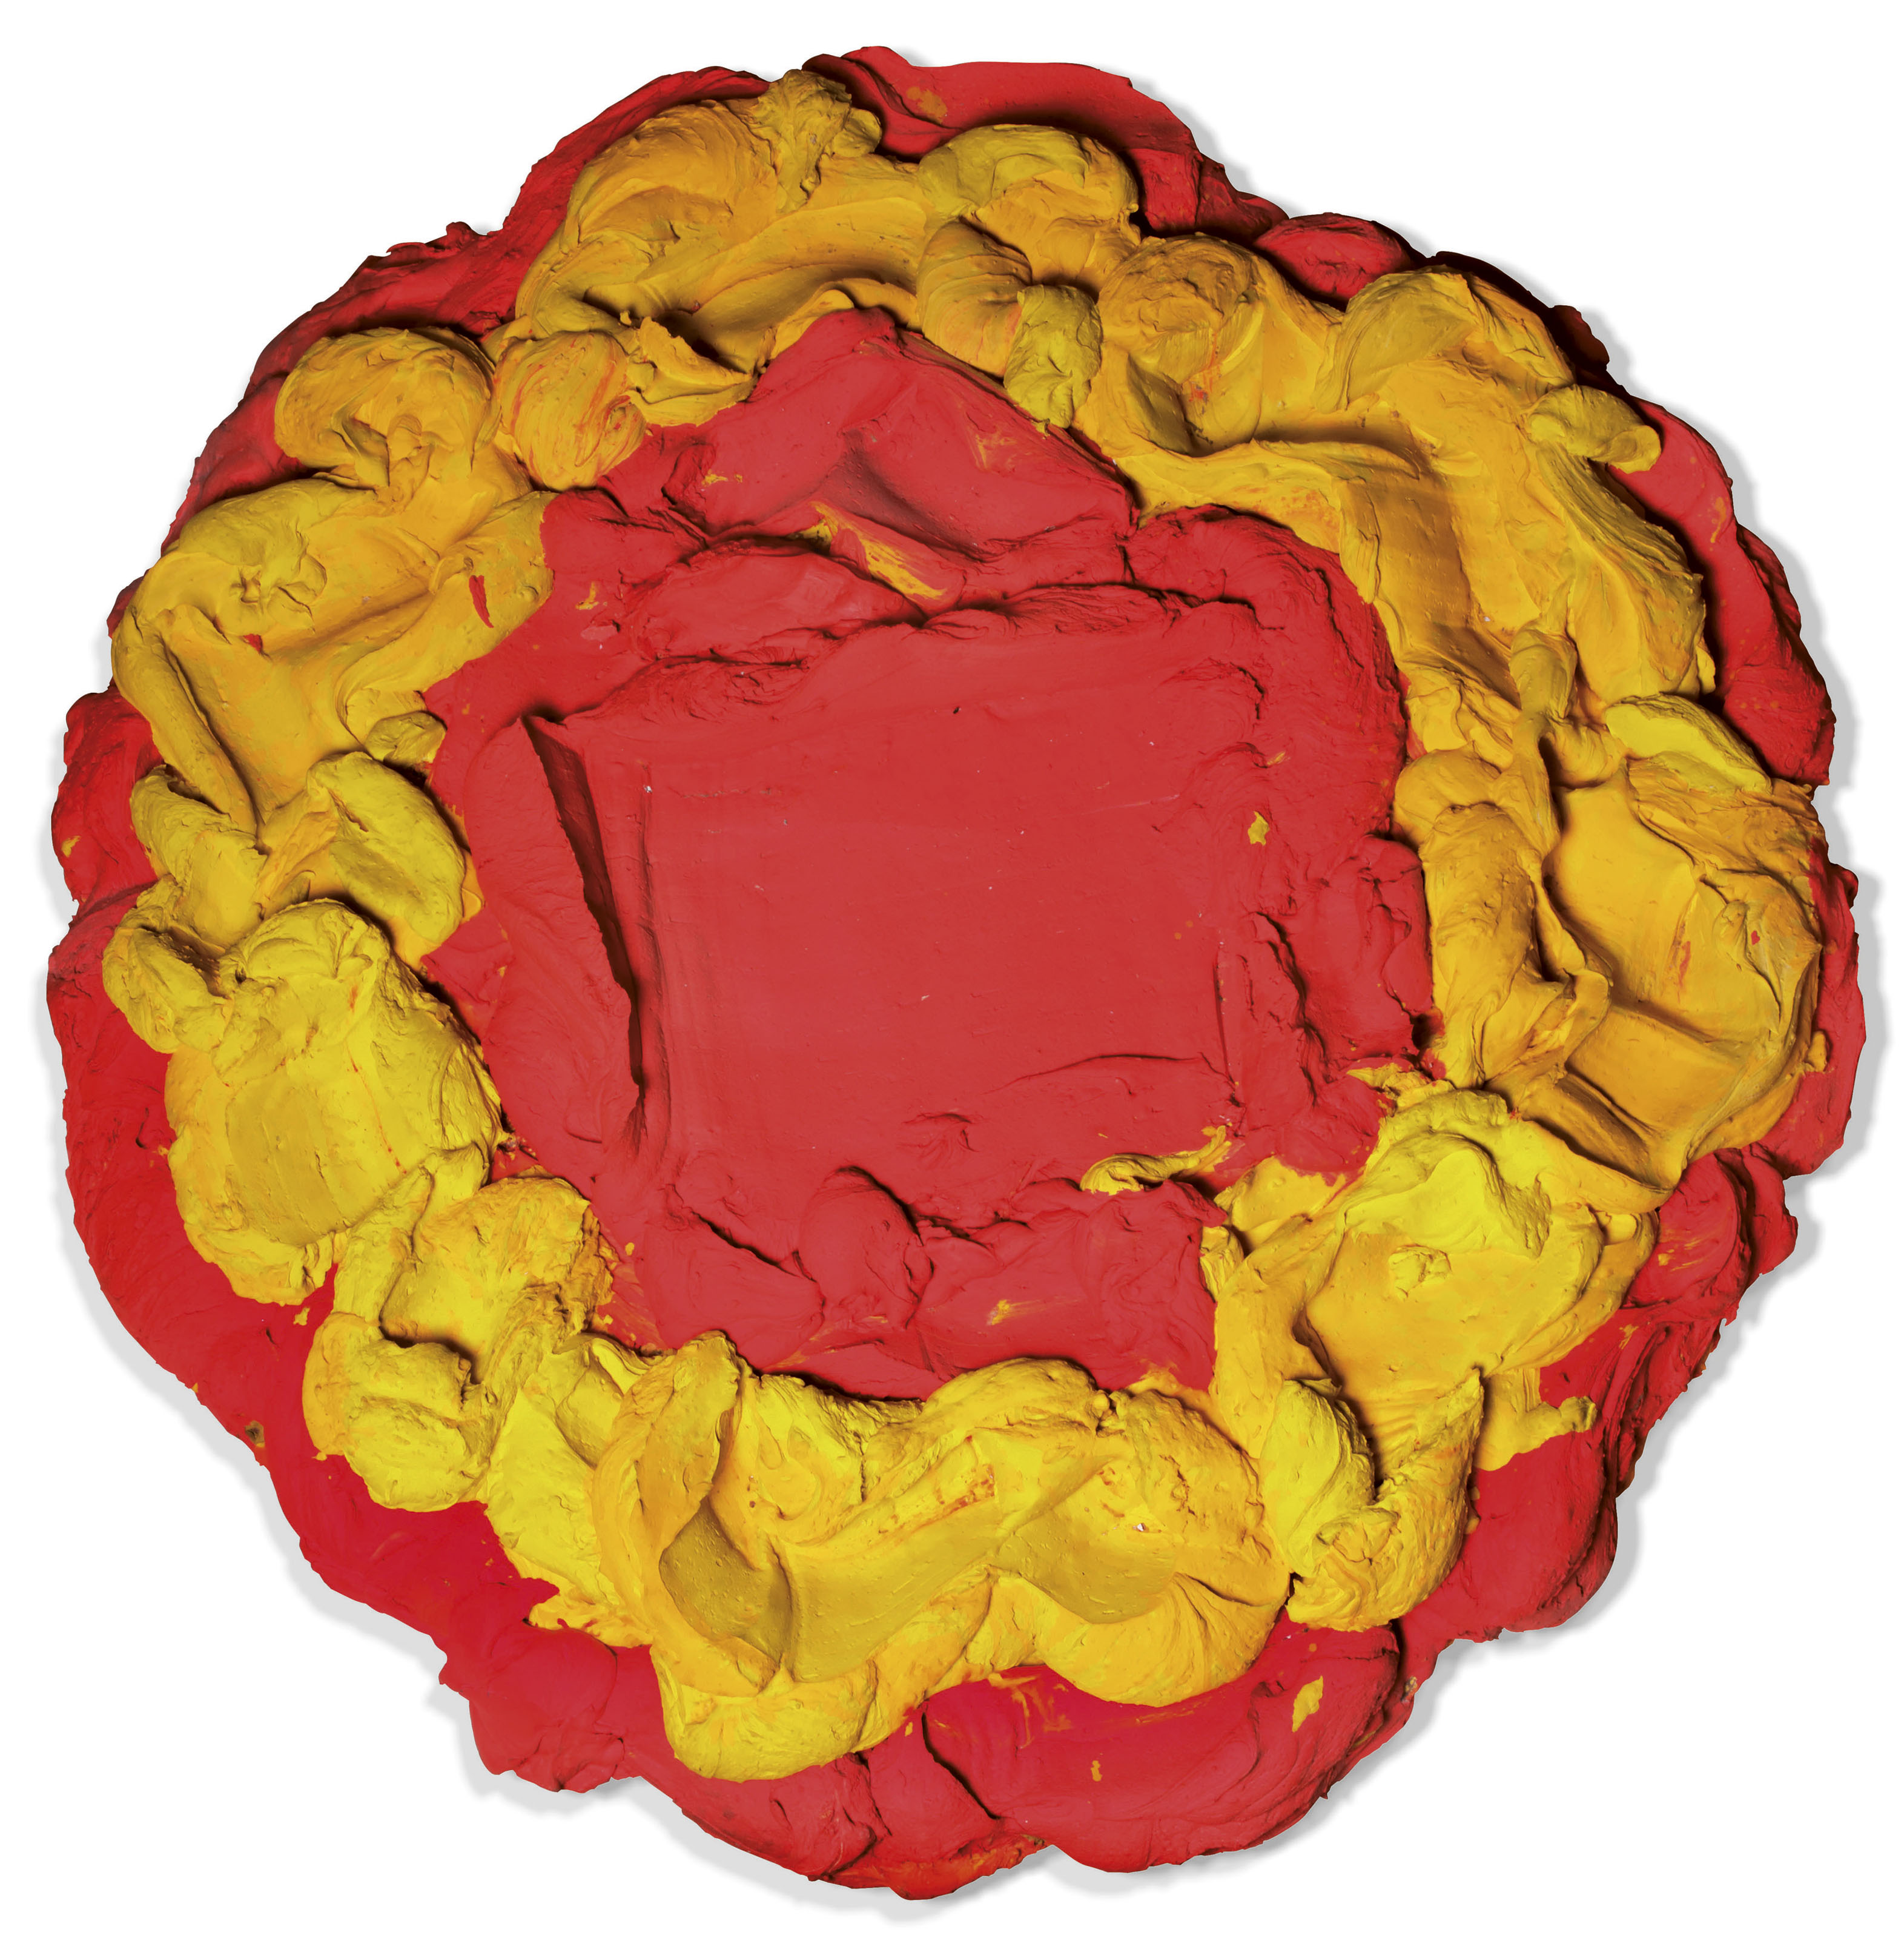 Kleurkrans (Wreath of Colour)